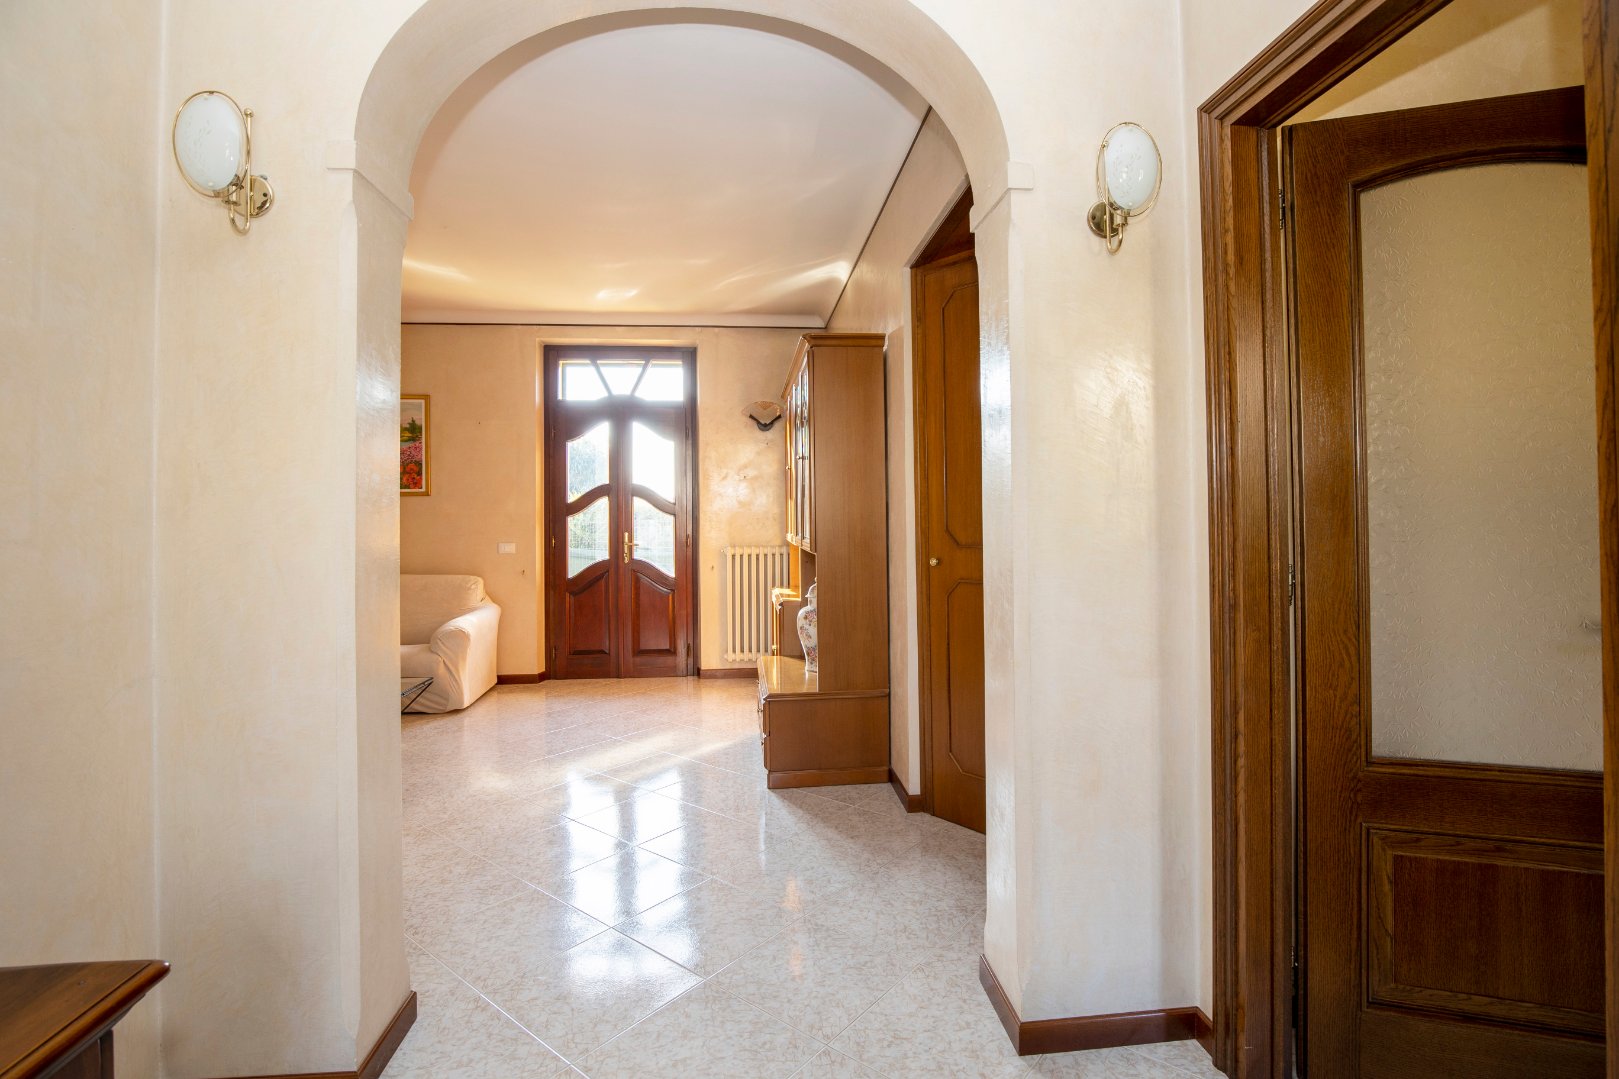 Villa Unifamiliare in vendita a Porto Mantovano